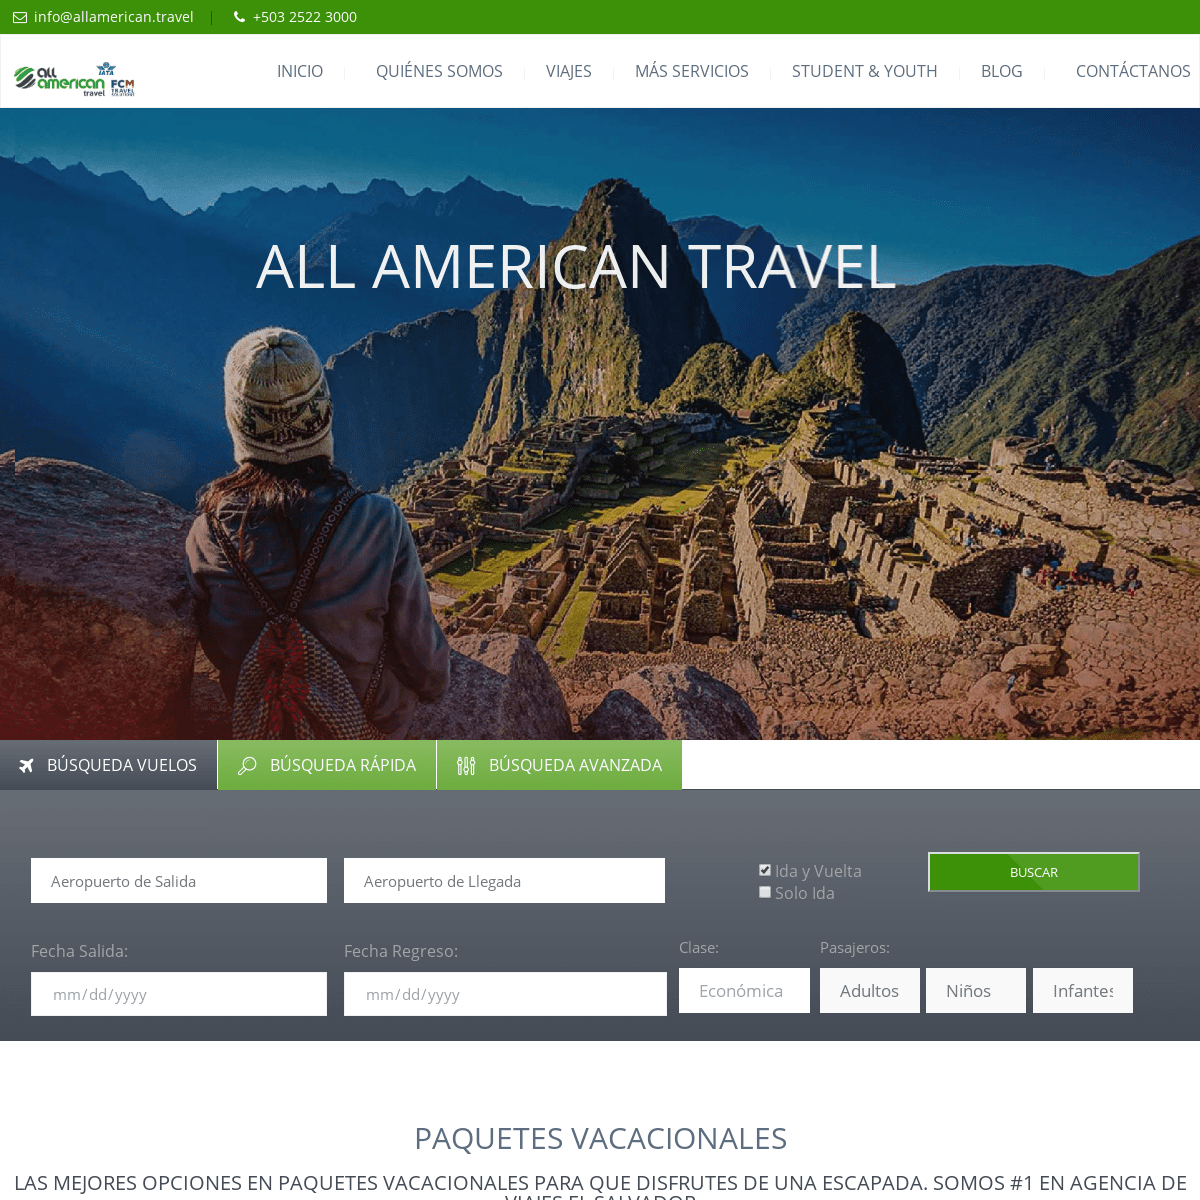 All American Travel - Agencia de Viajes El Salvador